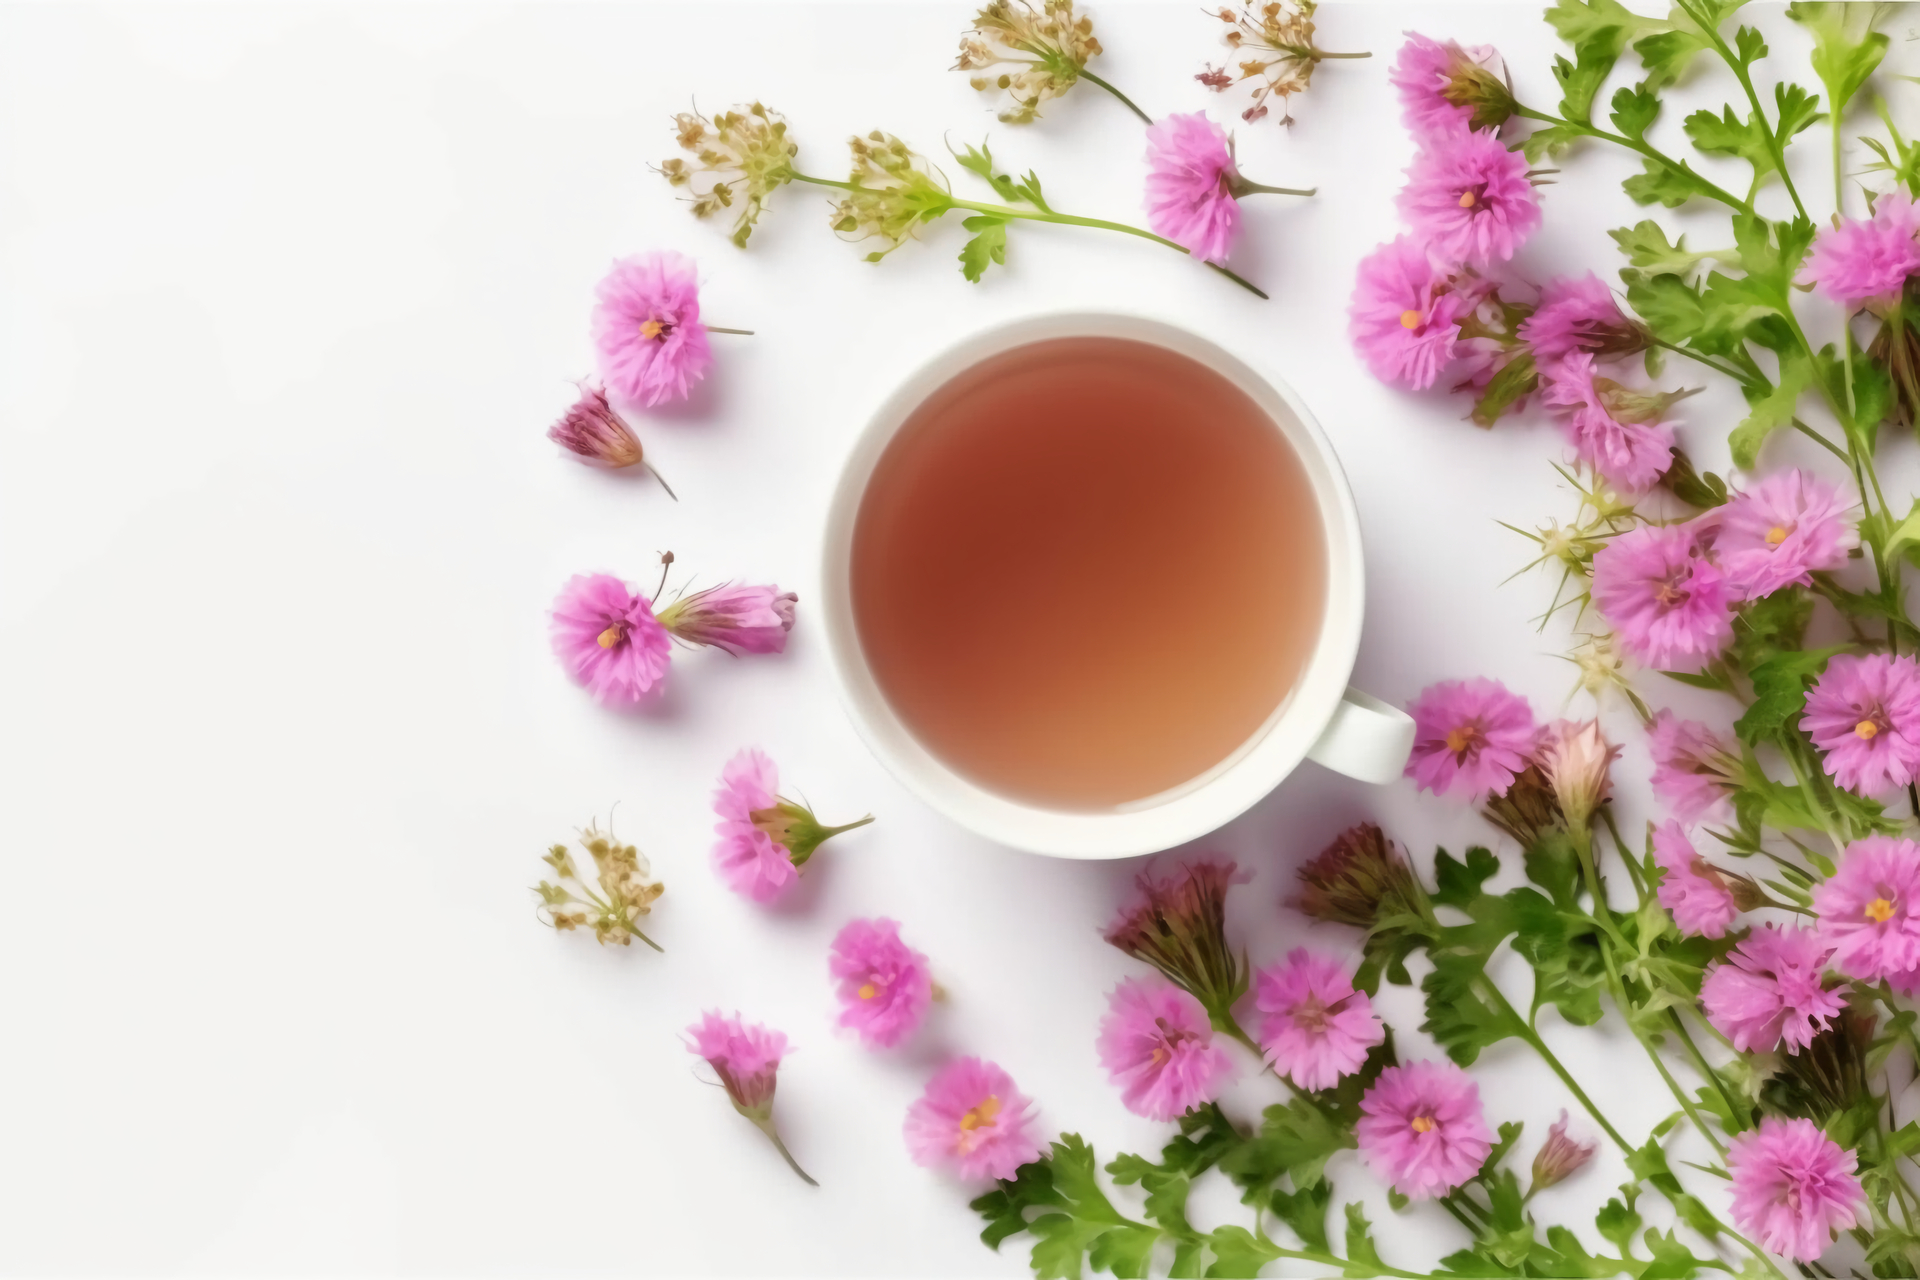 Na tym obrazku przedstawiona jest elegancka filiżanka z gorącą herbatą z ostropestu plamistego, emanująca przyjemnym aromatem i kuszącym kolorem. Właściwości zdrowotne ostropestu, które są wydobywane podczas parzenia, sprawiają, że ta herbata jest nie tylko smaczna, ale również korzystna dla organizmu. Wzbogacona o naturalne substancje oczyszczające i antyoksydanty, herbata z ostropestu oferuje doskonały sposób na relaks i odprężenie wraz z dodatkowymi korzyściami dla zdrowia